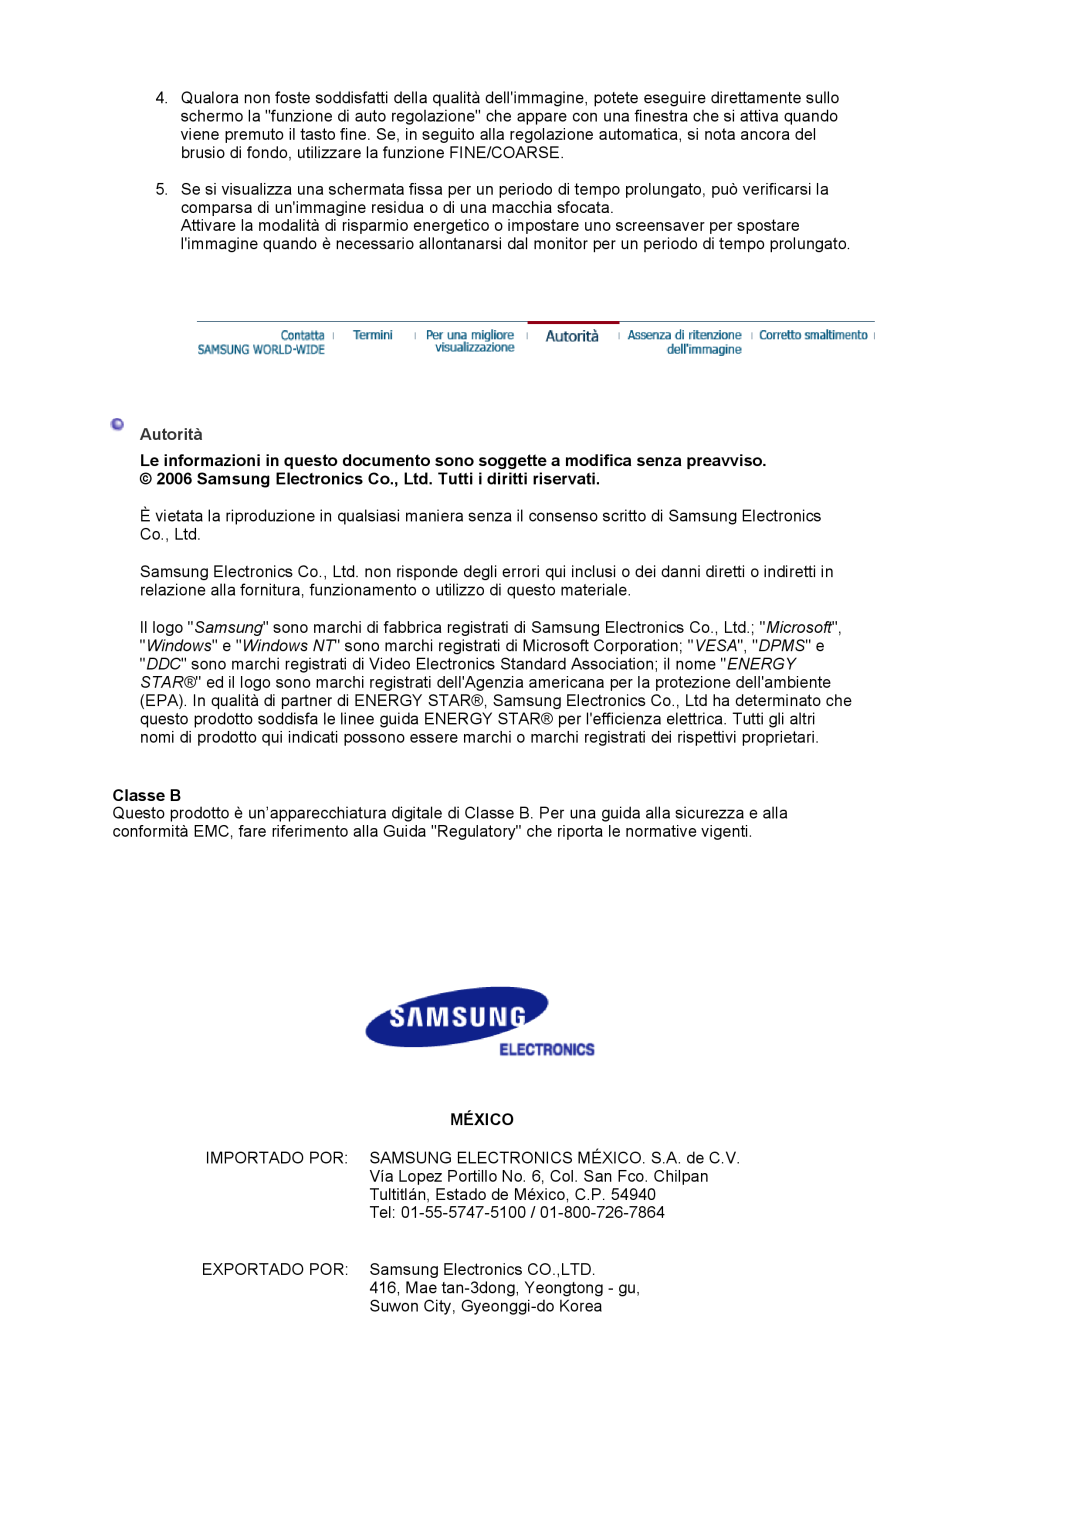 Samsung LS17MJVKS/EDC manual Autorità, Classe B, México 